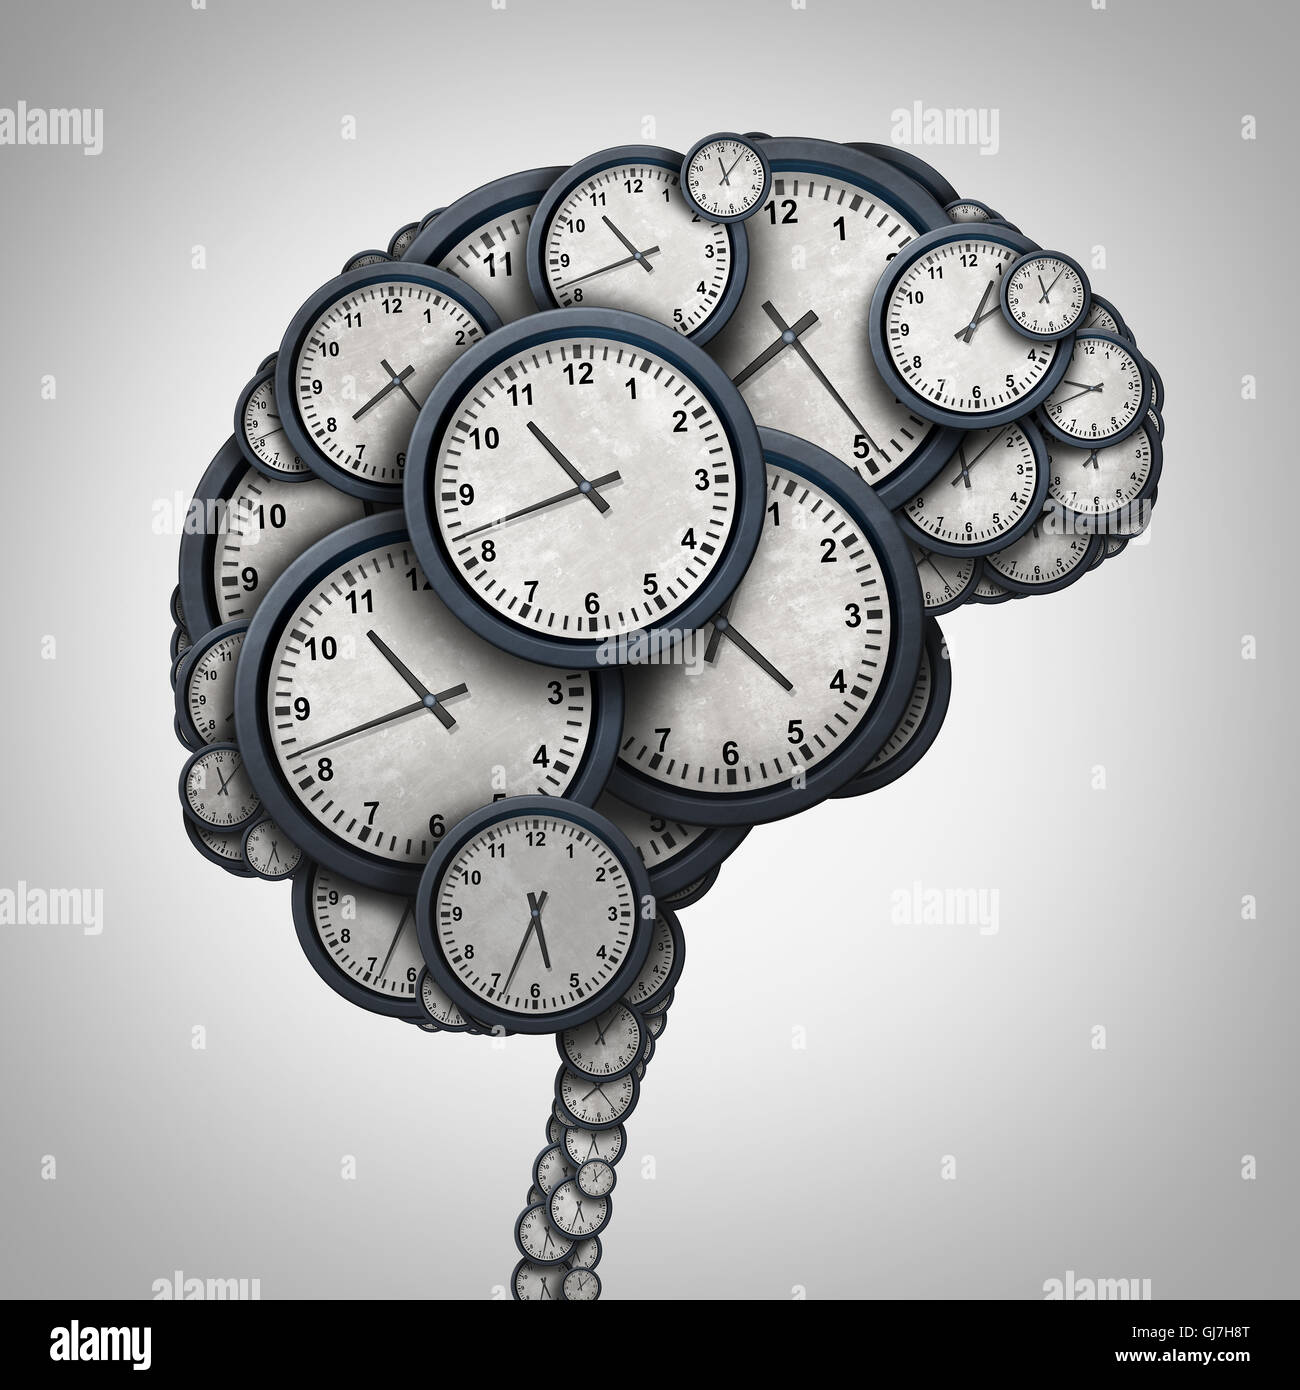 Tiempo concepto pensamiento cerebral como un grupo de objetos del reloj con forma de una mente humana como un negocio de puntualidad y cita el estrés Foto de stock